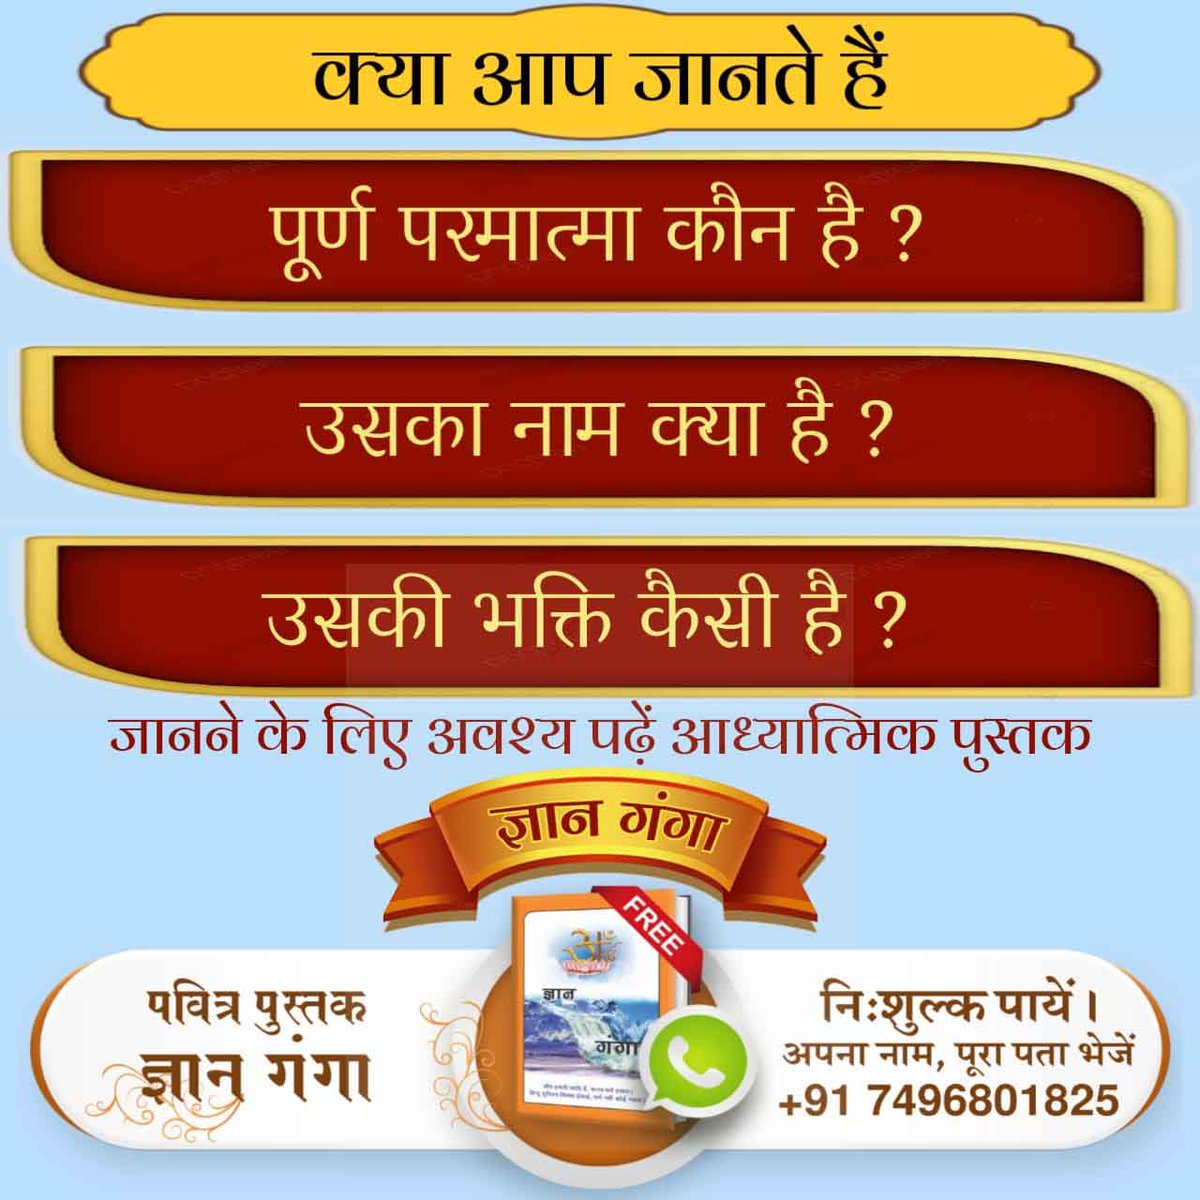 #Books_For_InnerPeace

📕कौनसे राम का नाम जपना चाहिए?
जानने के लिए अवश्य पढ़ें आध्यात्मिक पुस्तक ज्ञान गंगा 
Watch sadhna t v 730 pm daily

BestHindiBooks